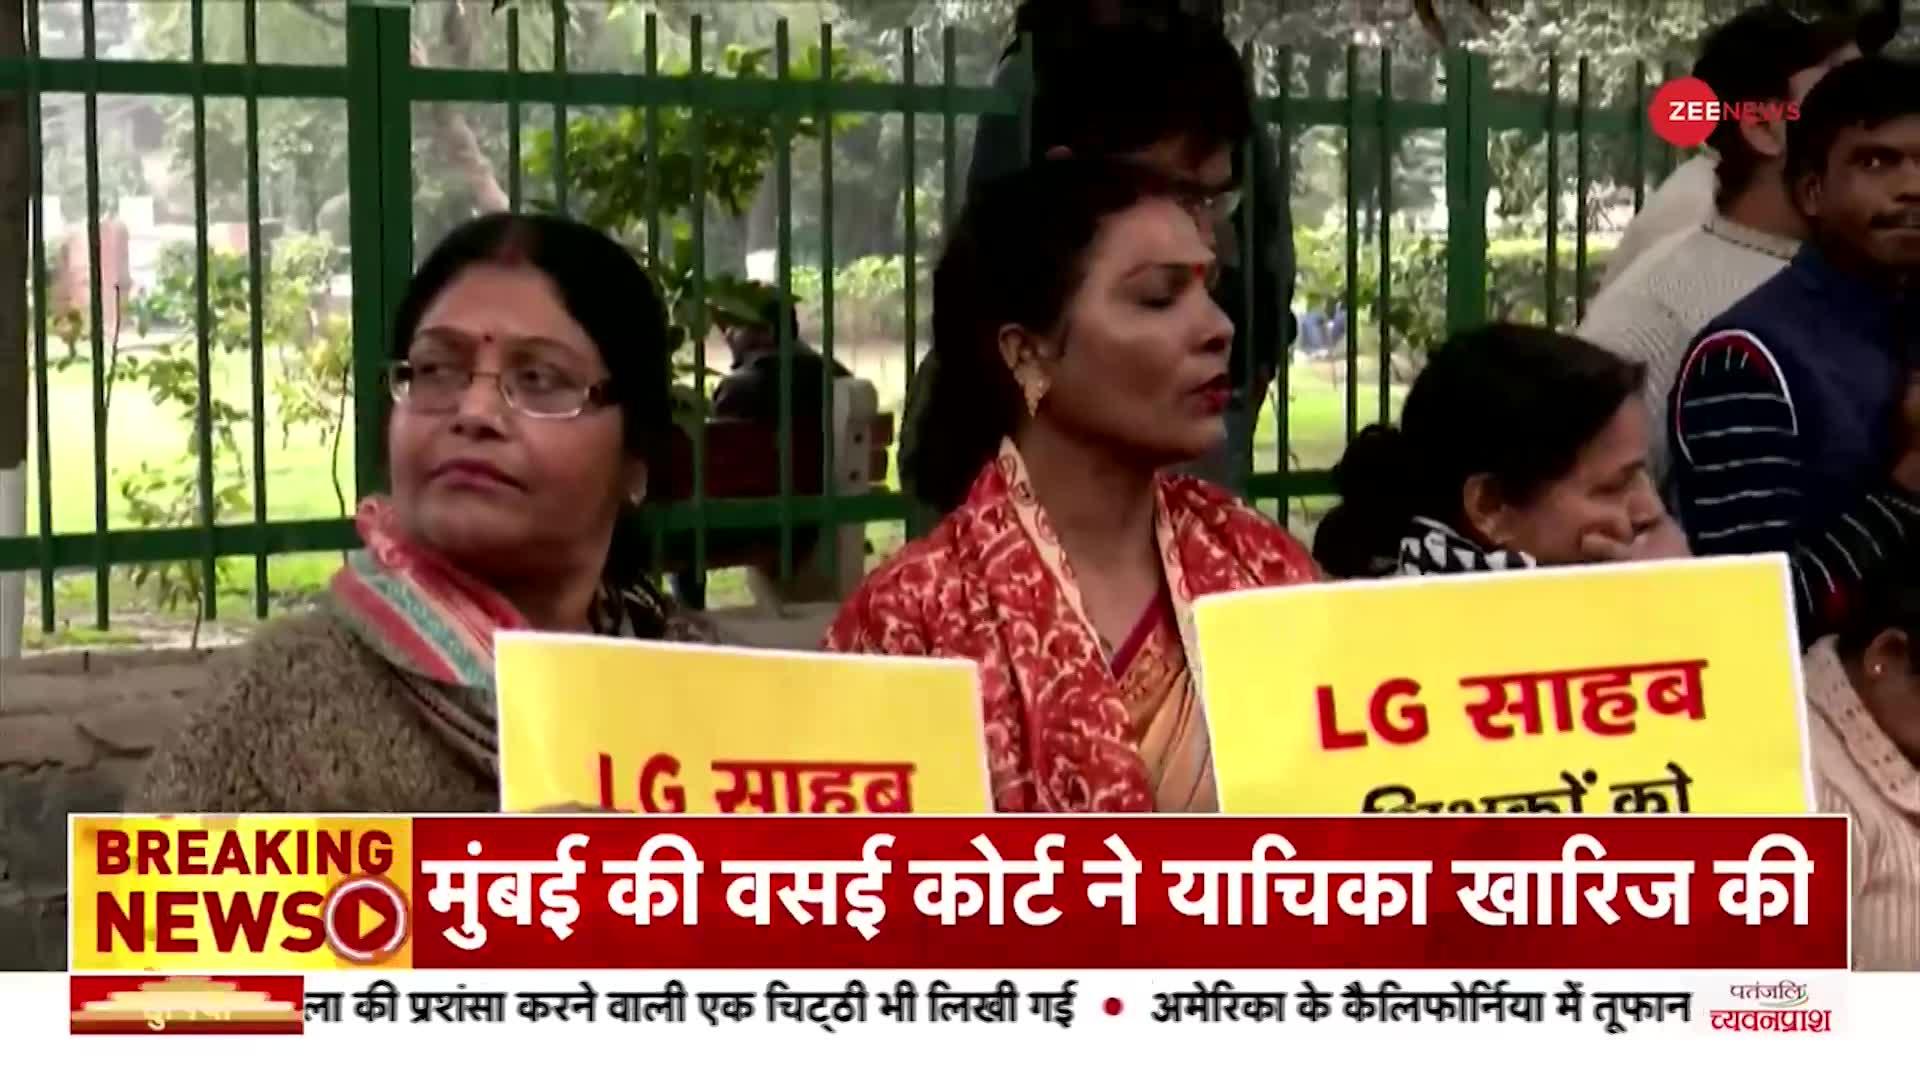 दिल्ली में टीचर्स के साथ AAP का प्रदर्शन, LG ऑफिस का किया घेराव